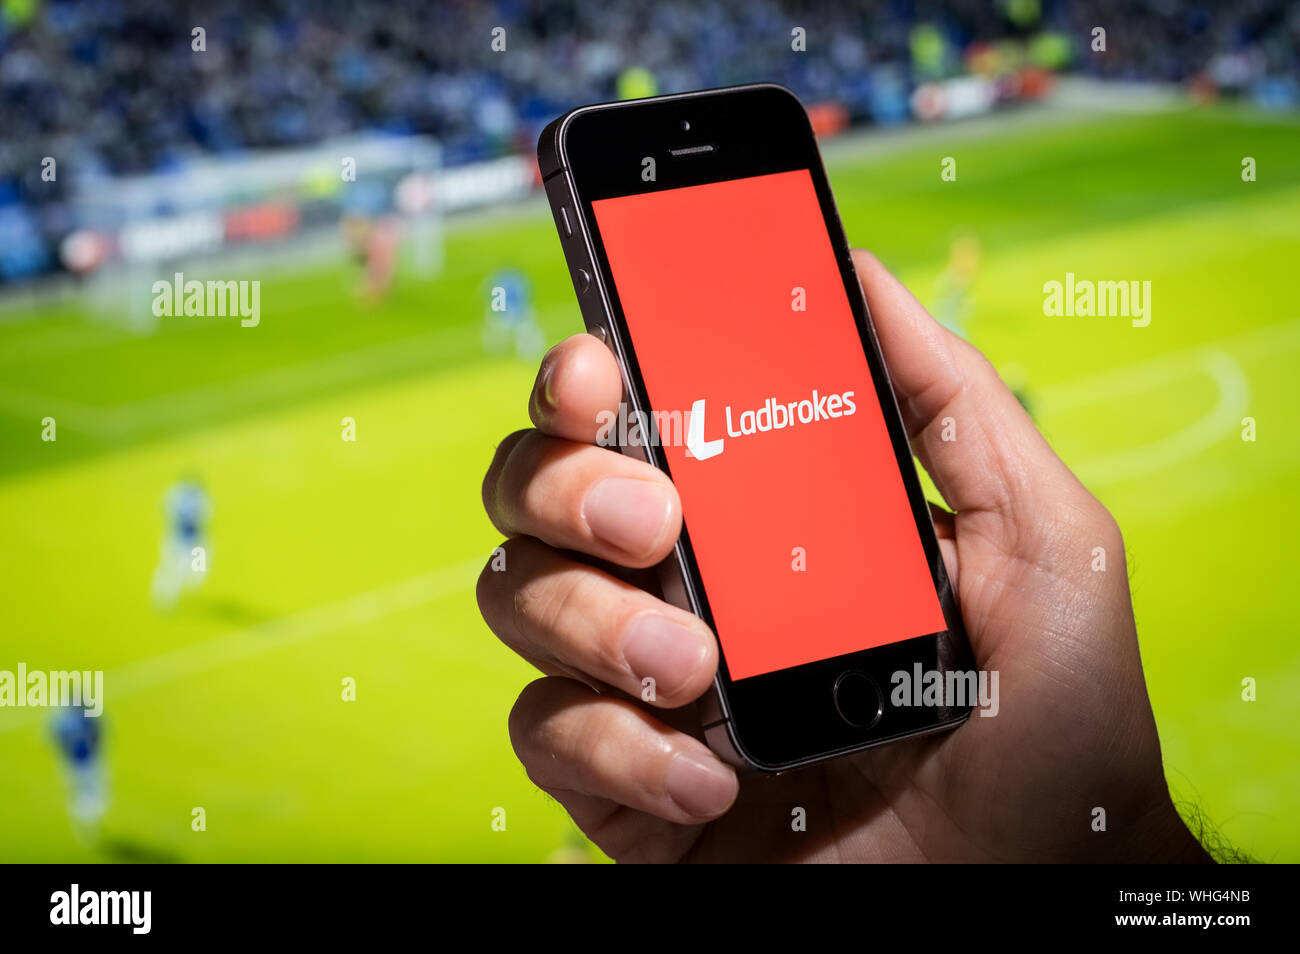 Ein Mann auf der Suche an der Ladbrokes app-Webseite, während gerade der Fußball Stockfoto